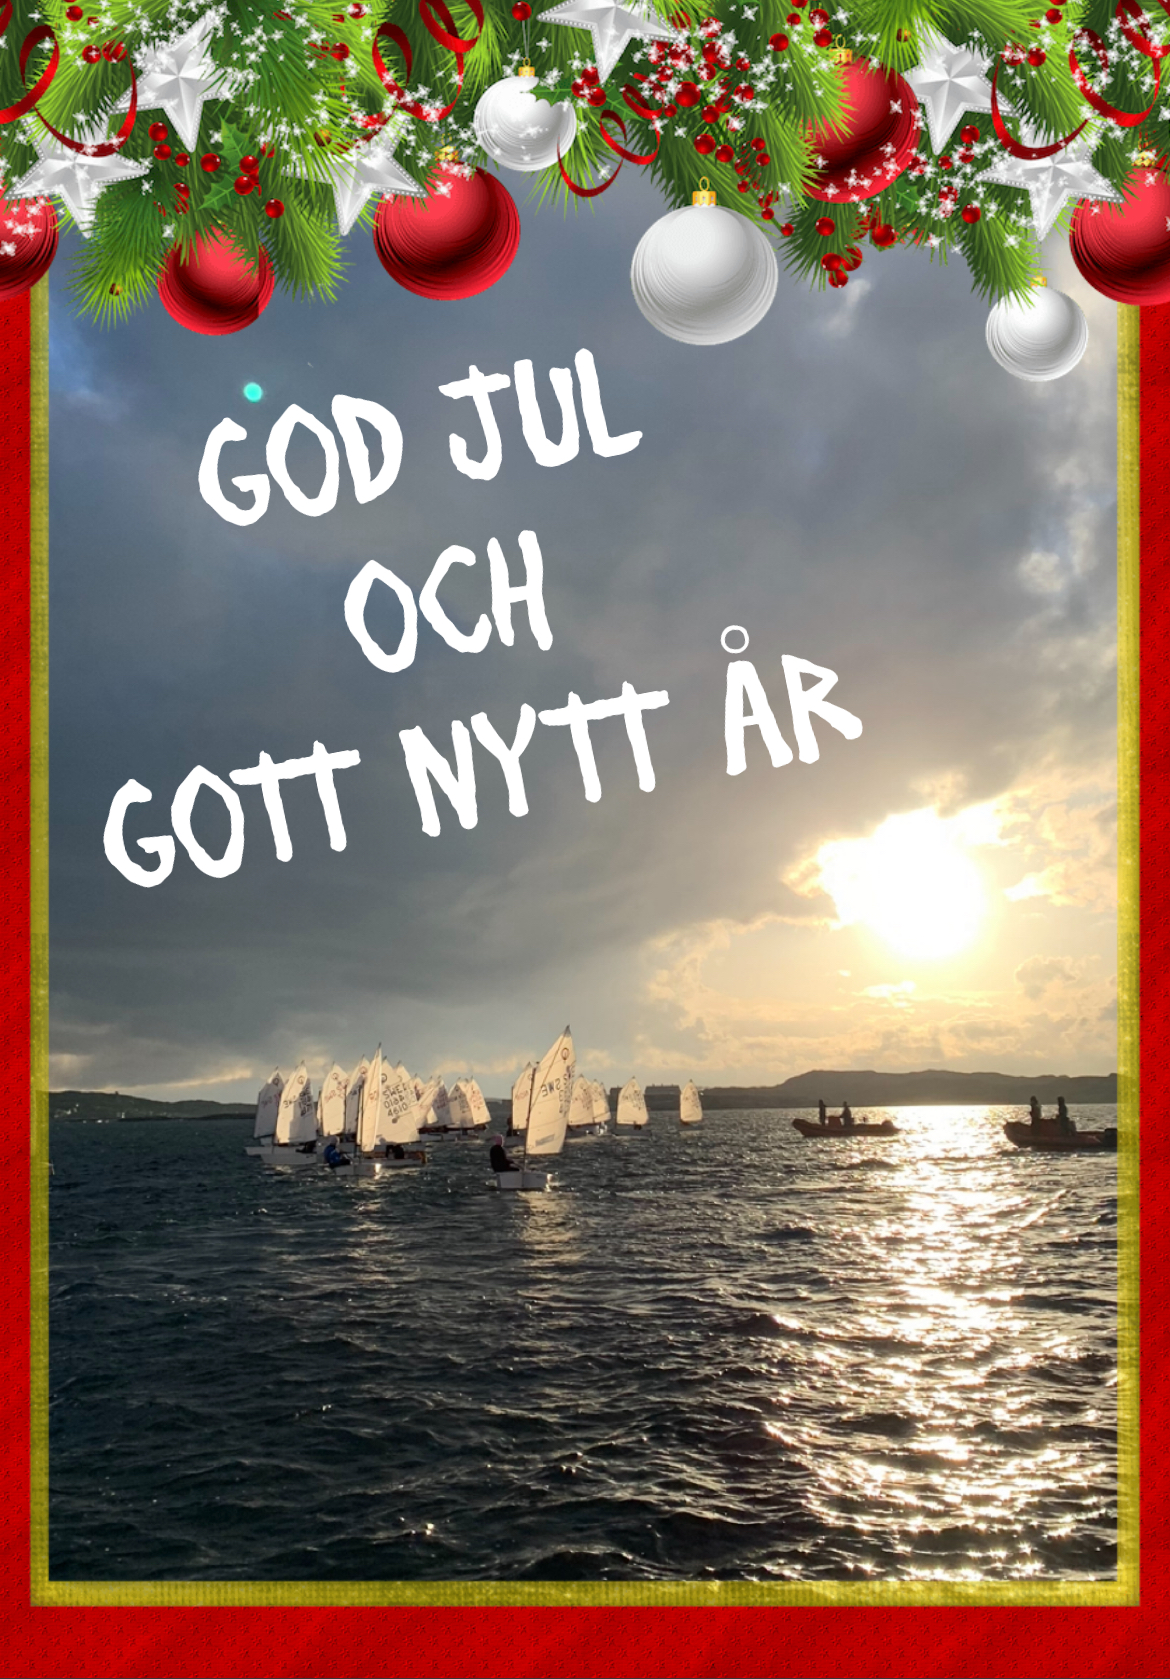 image: God Jul och Gott Nytt År!